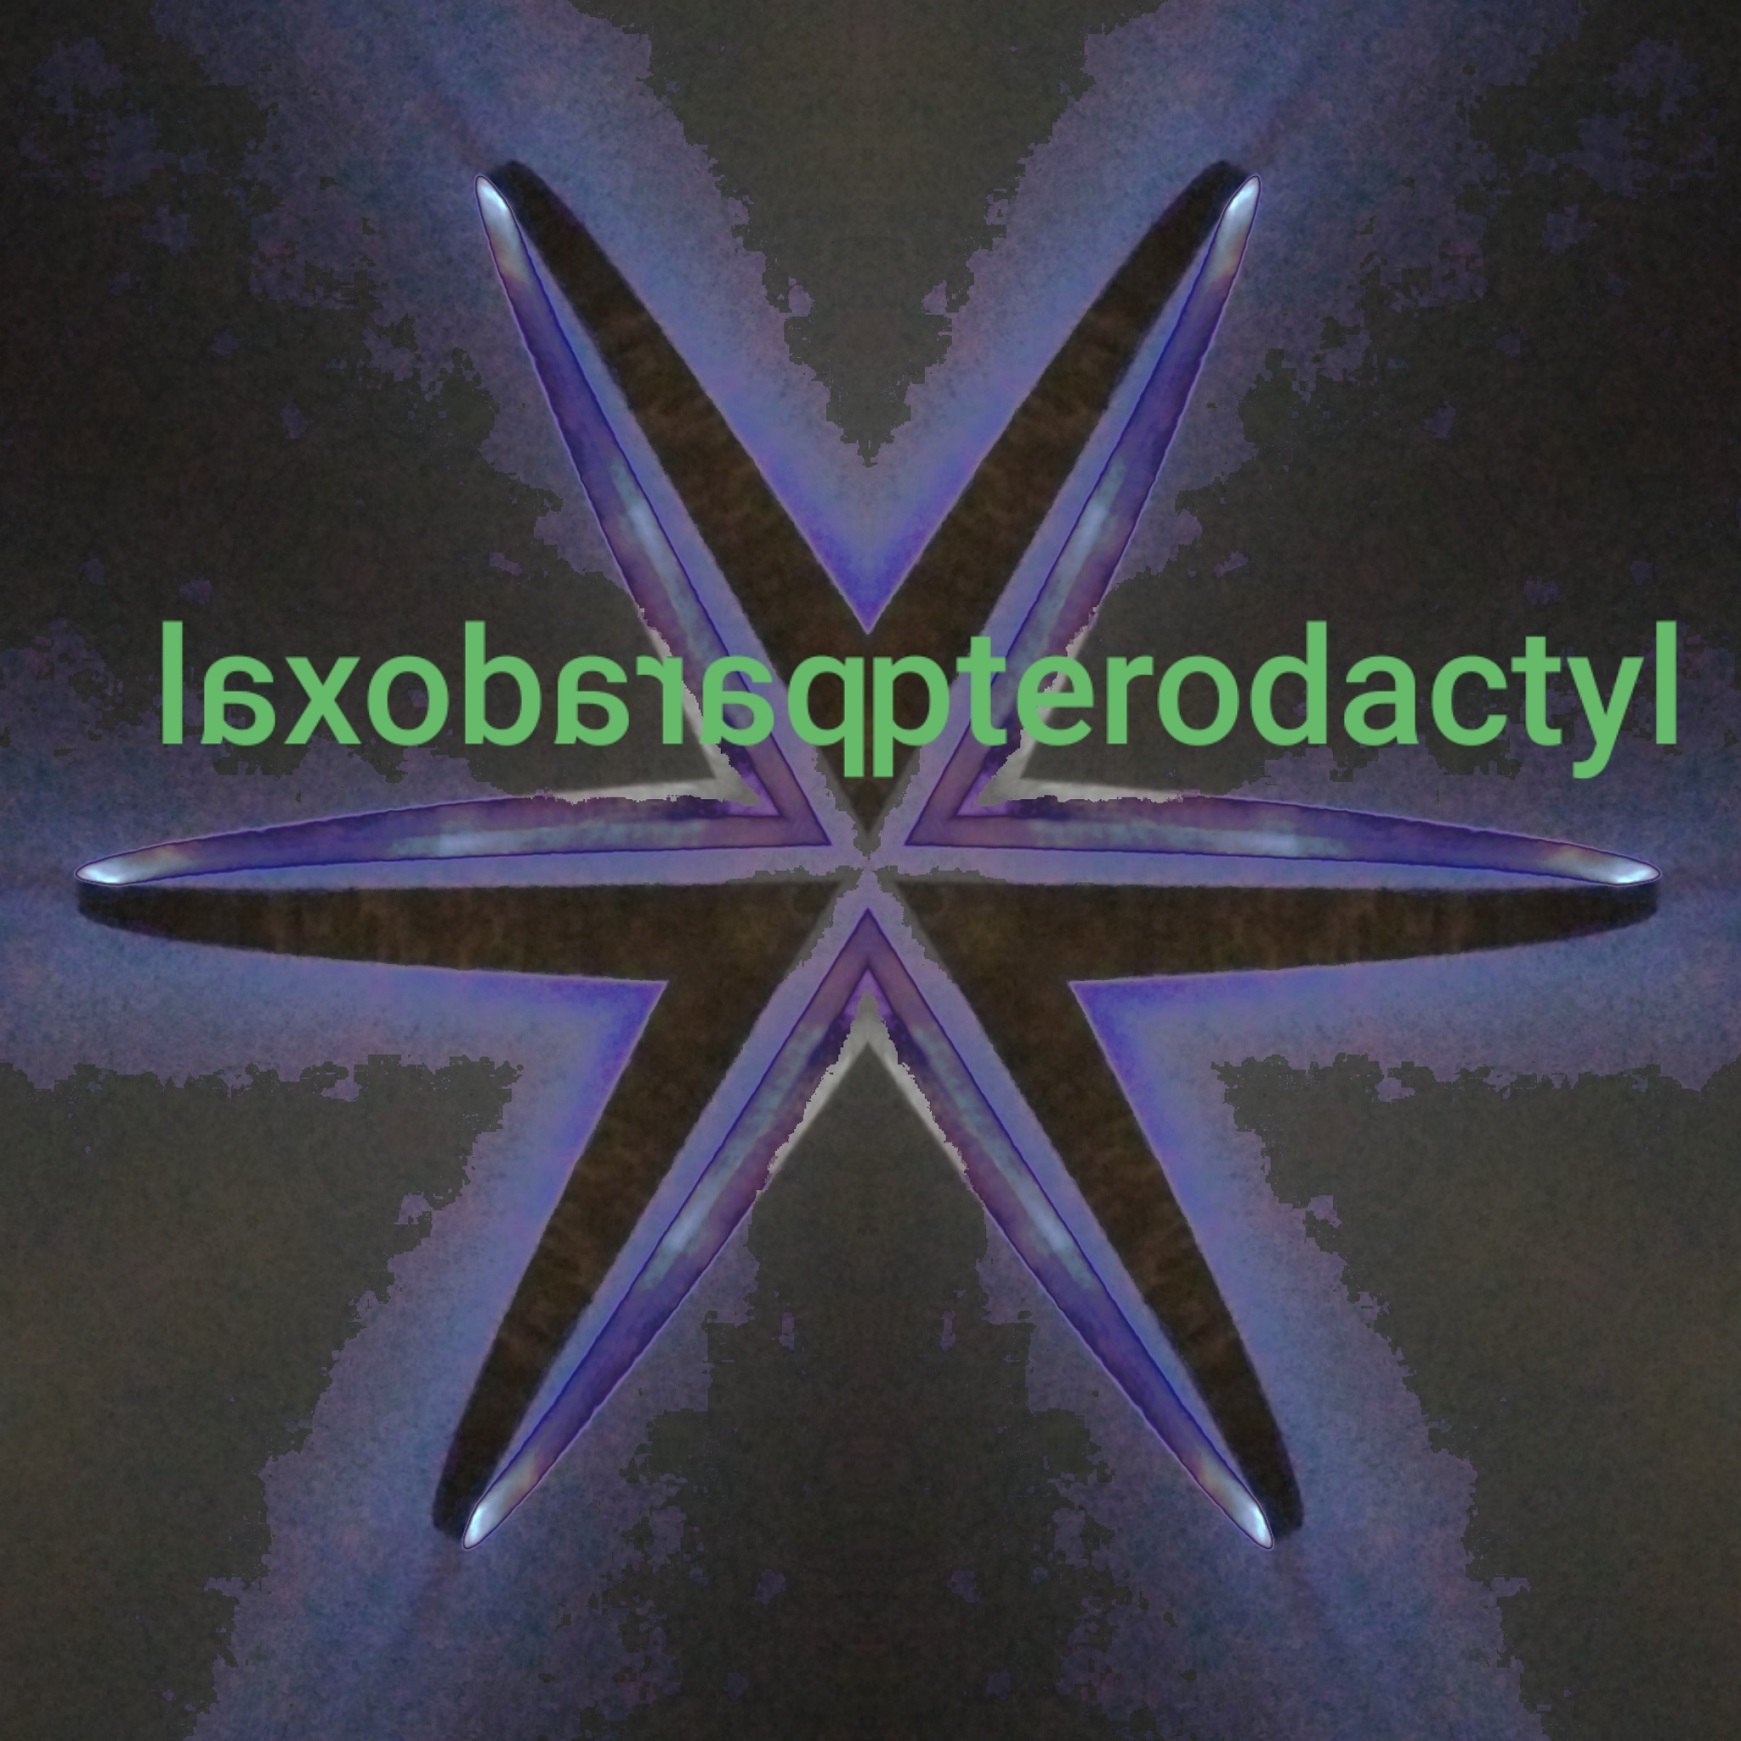 Paradoxal Pterodactyl - biggie chills roblox song id